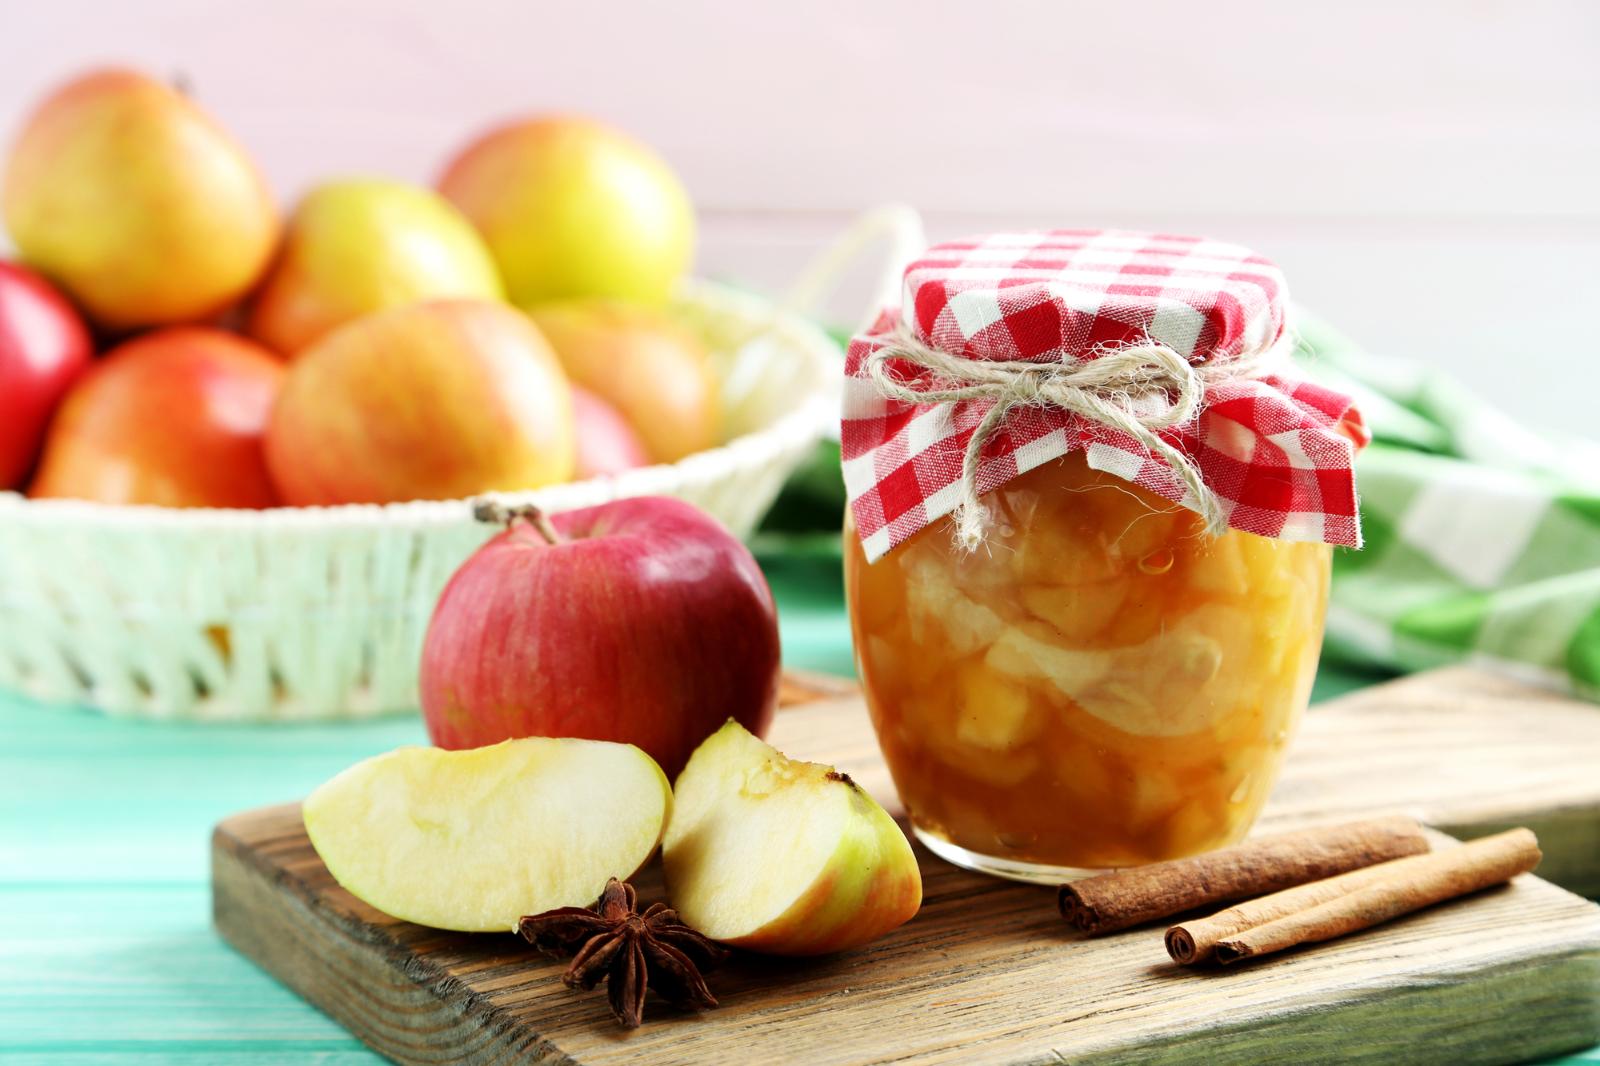 Прозрачное и вкусное! Певица Зара поделилась простым рецептом яблочного варенья